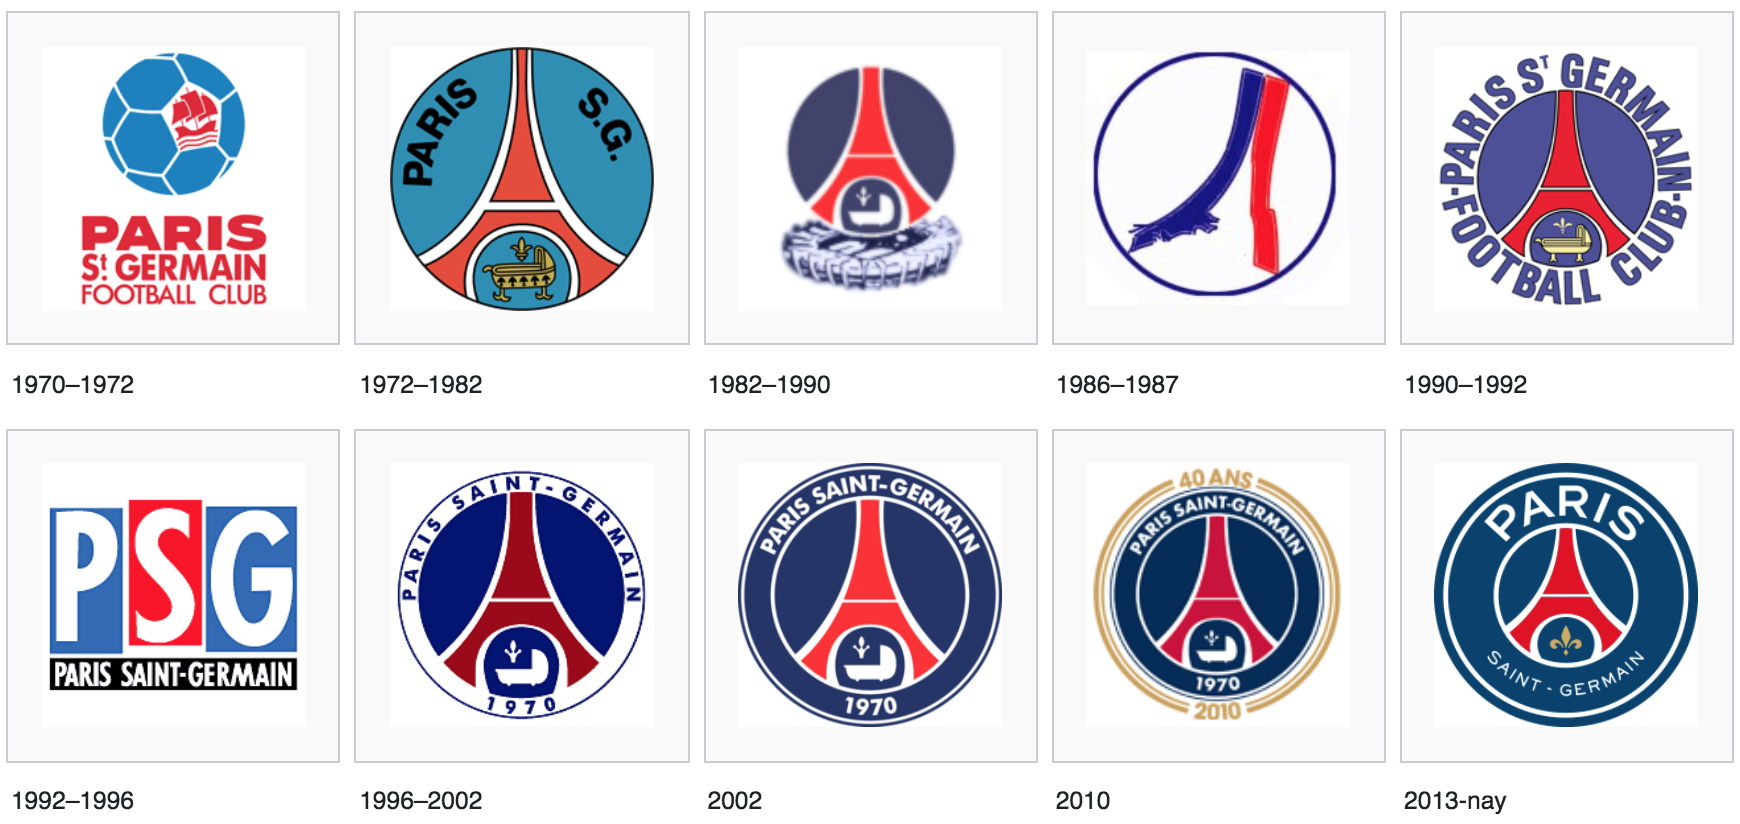 Tiểu sử câu lạc bộ PSG - Thông tin CLB Paris Saint-Germain